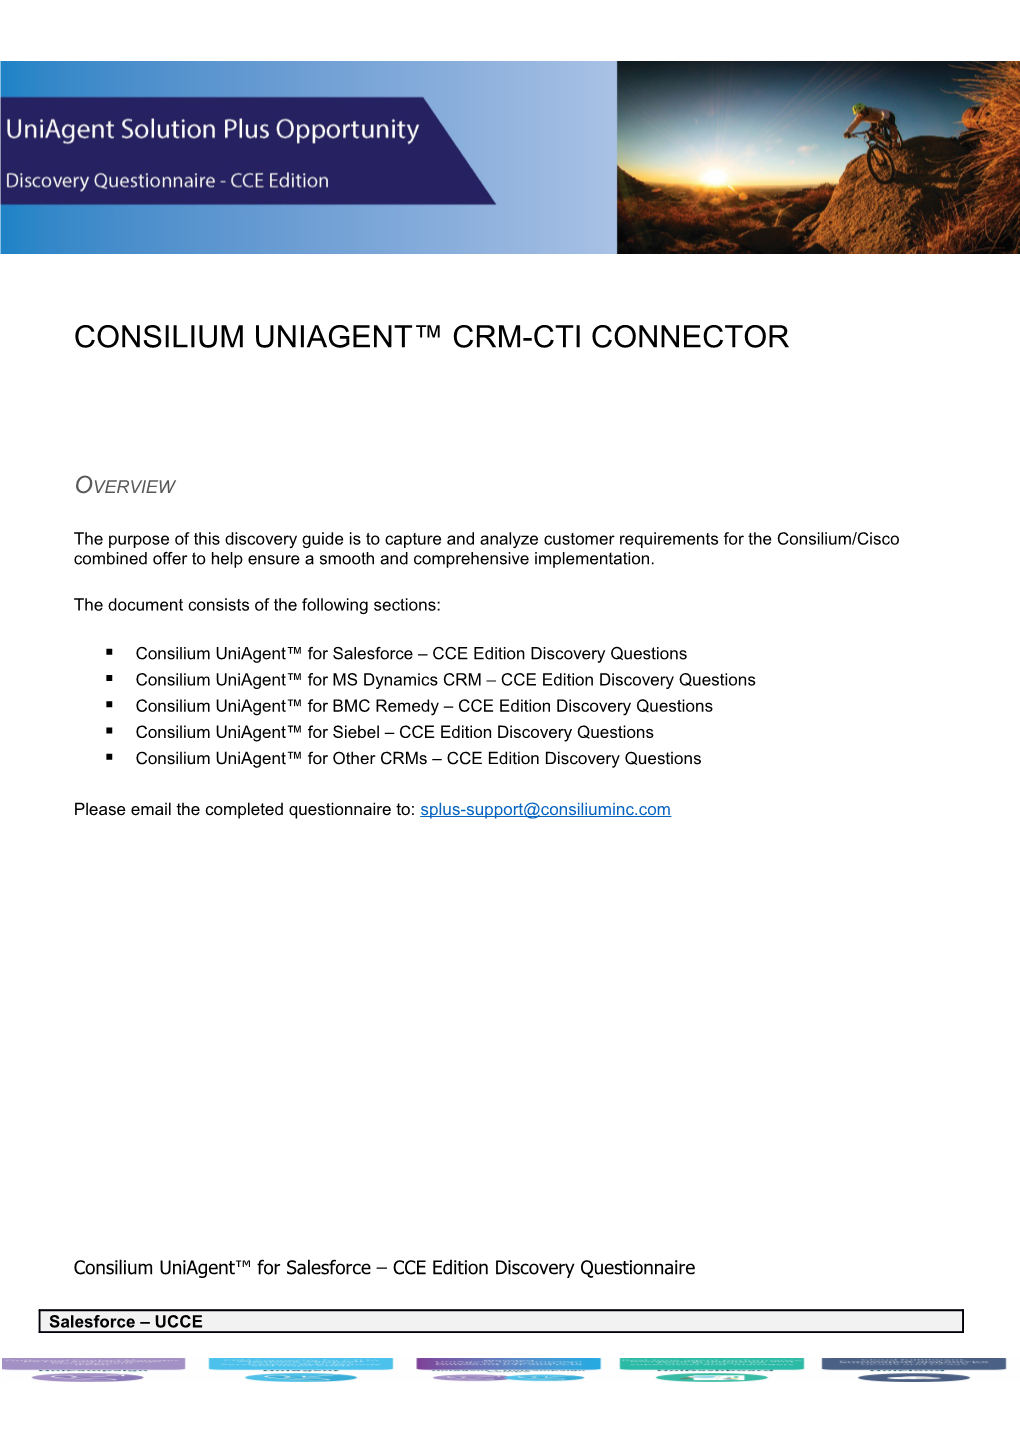 Consilium Uniagent CRM-CTI Connector